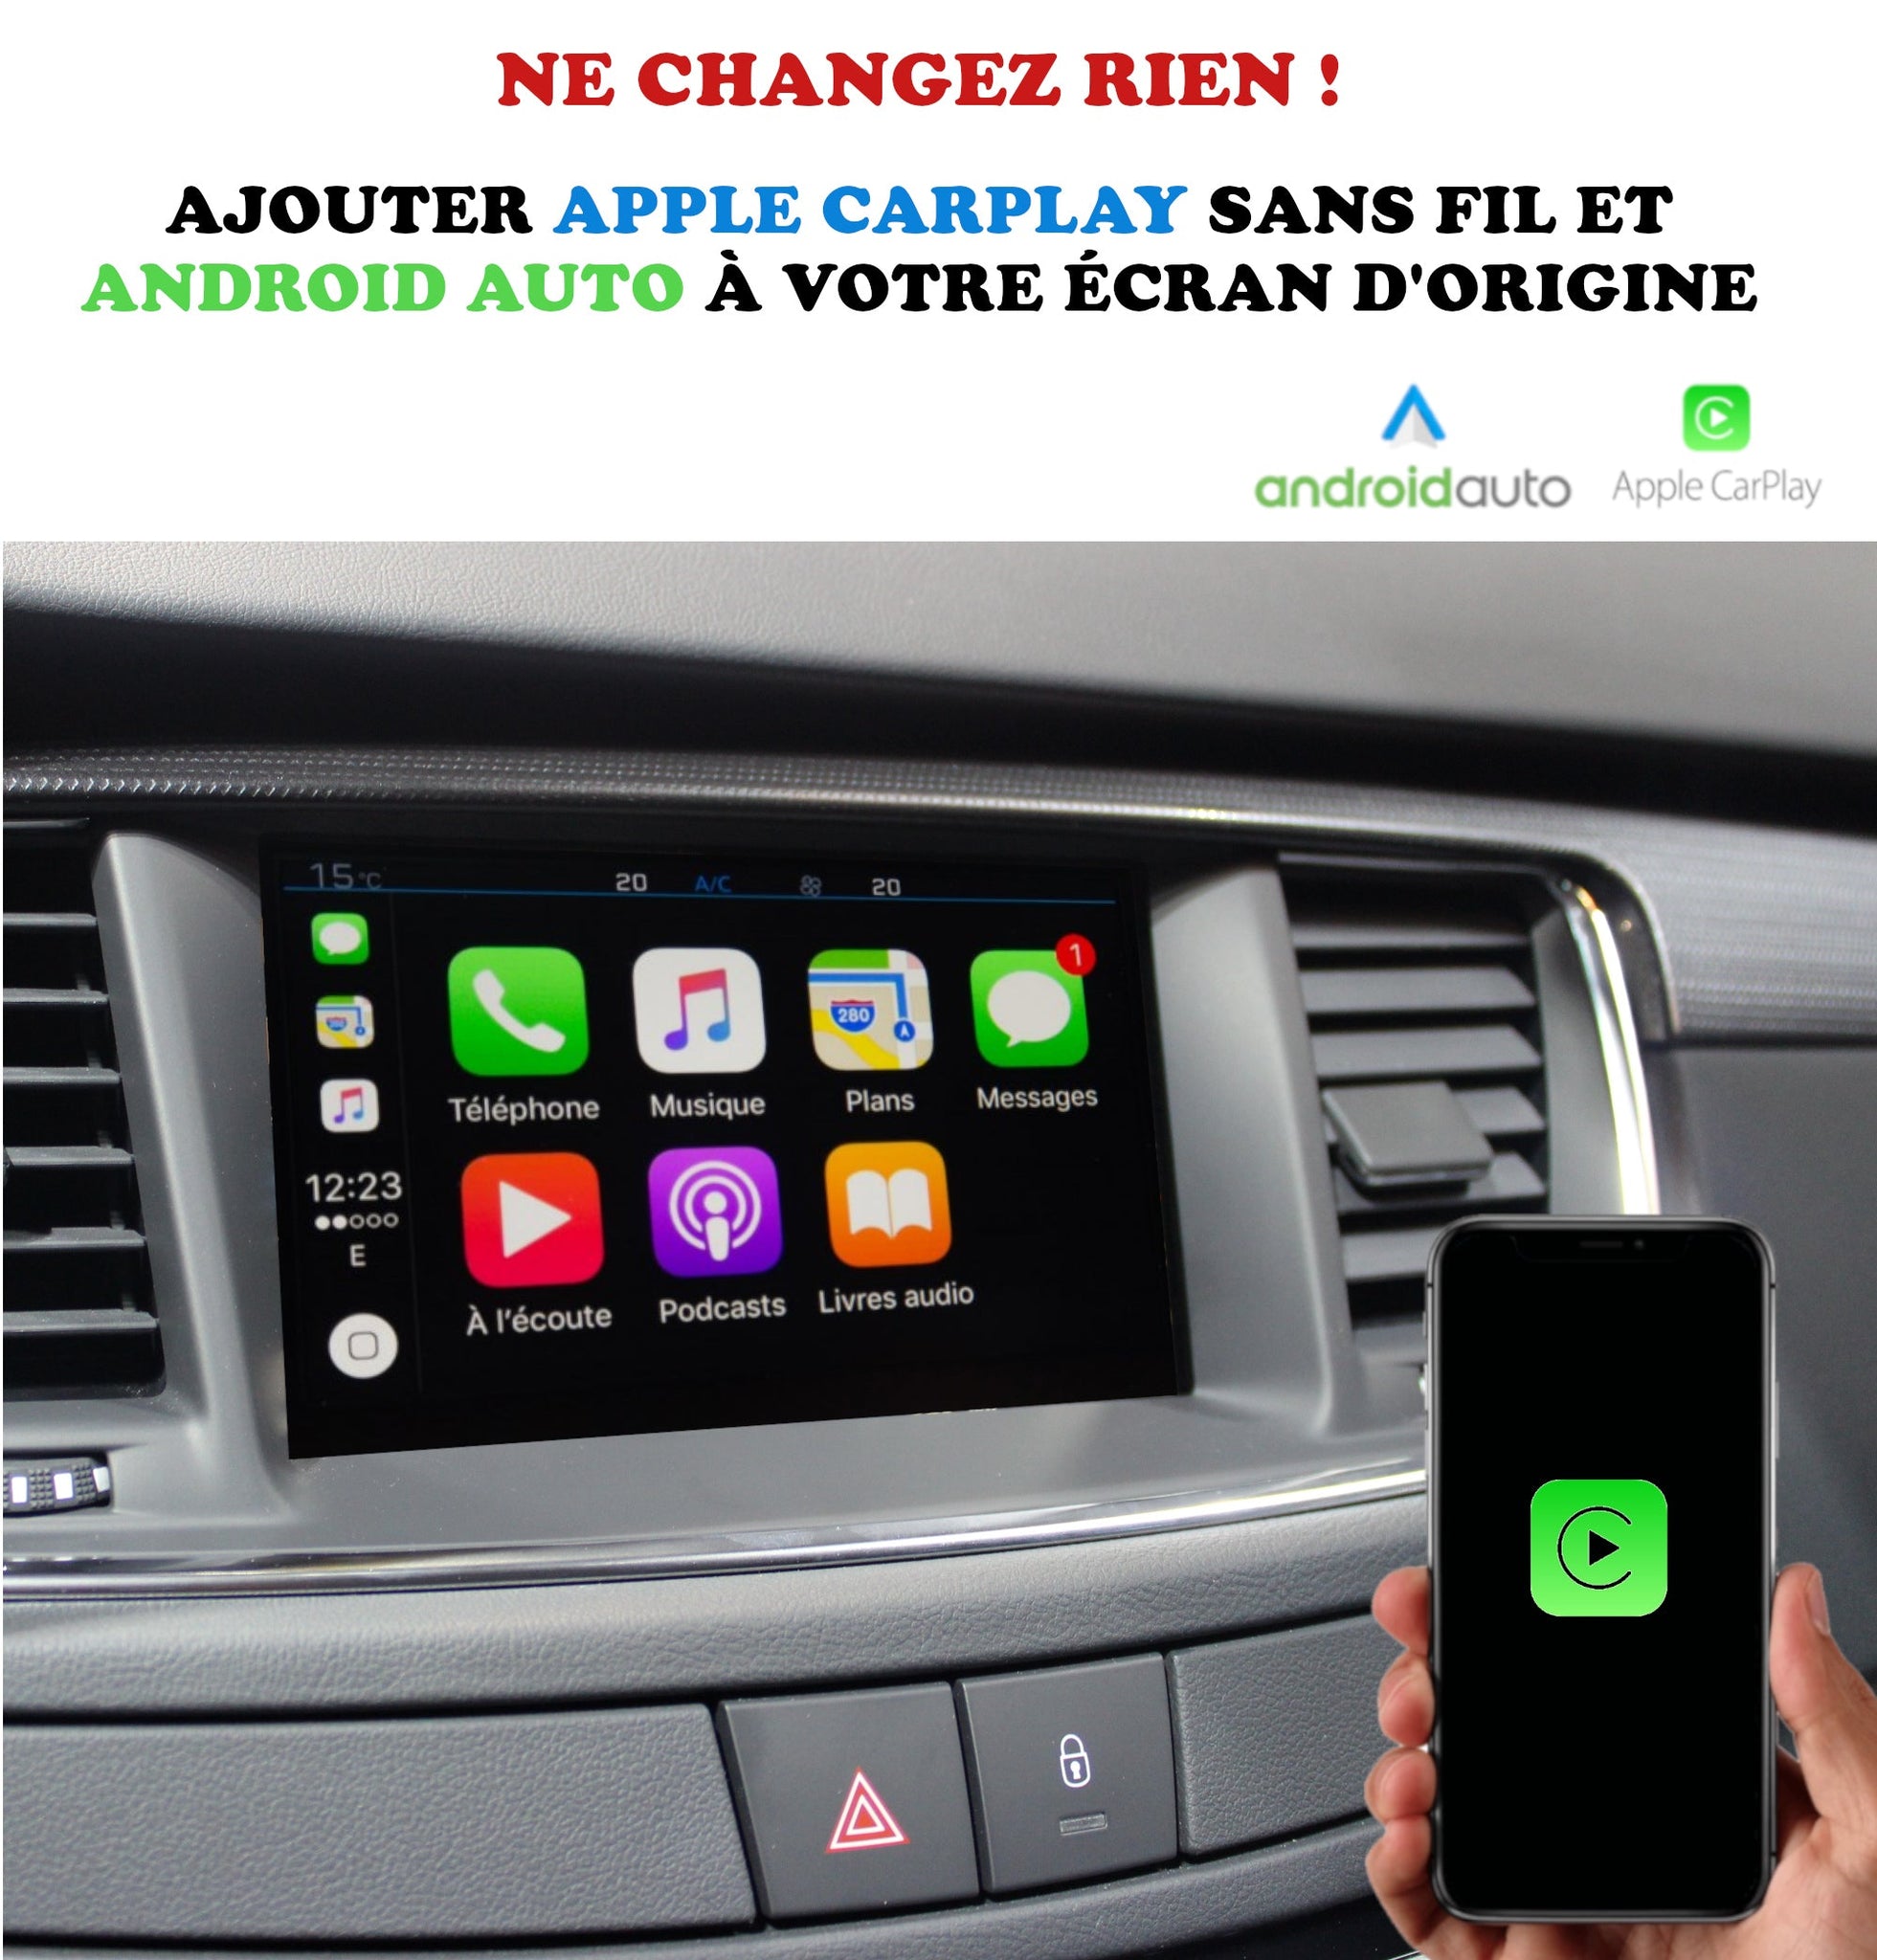 Carplay et Android Auto sans fil sur votre écran d'origine via USB 